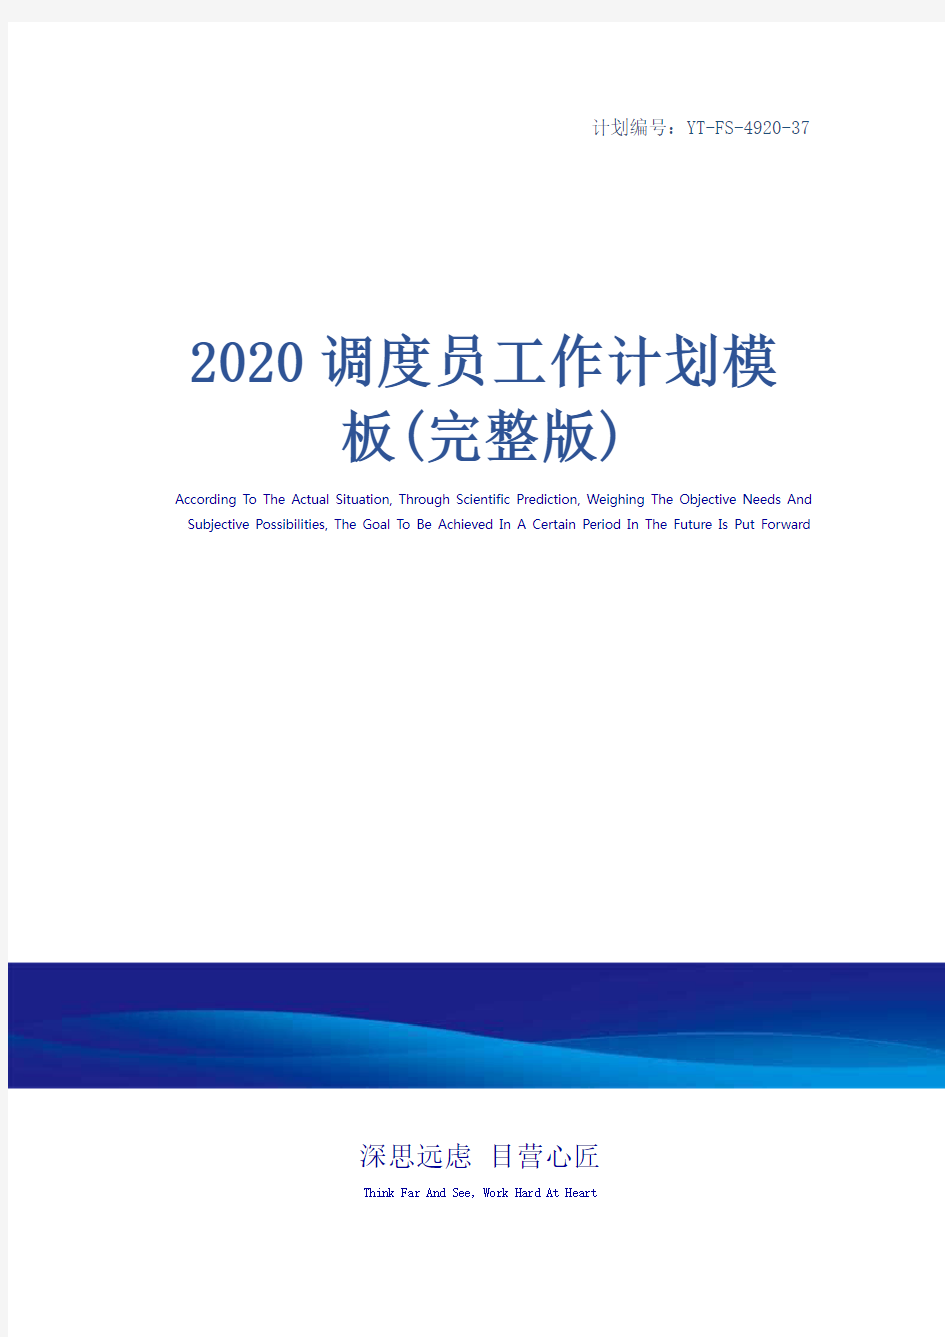 2020调度员工作计划模板(完整版)